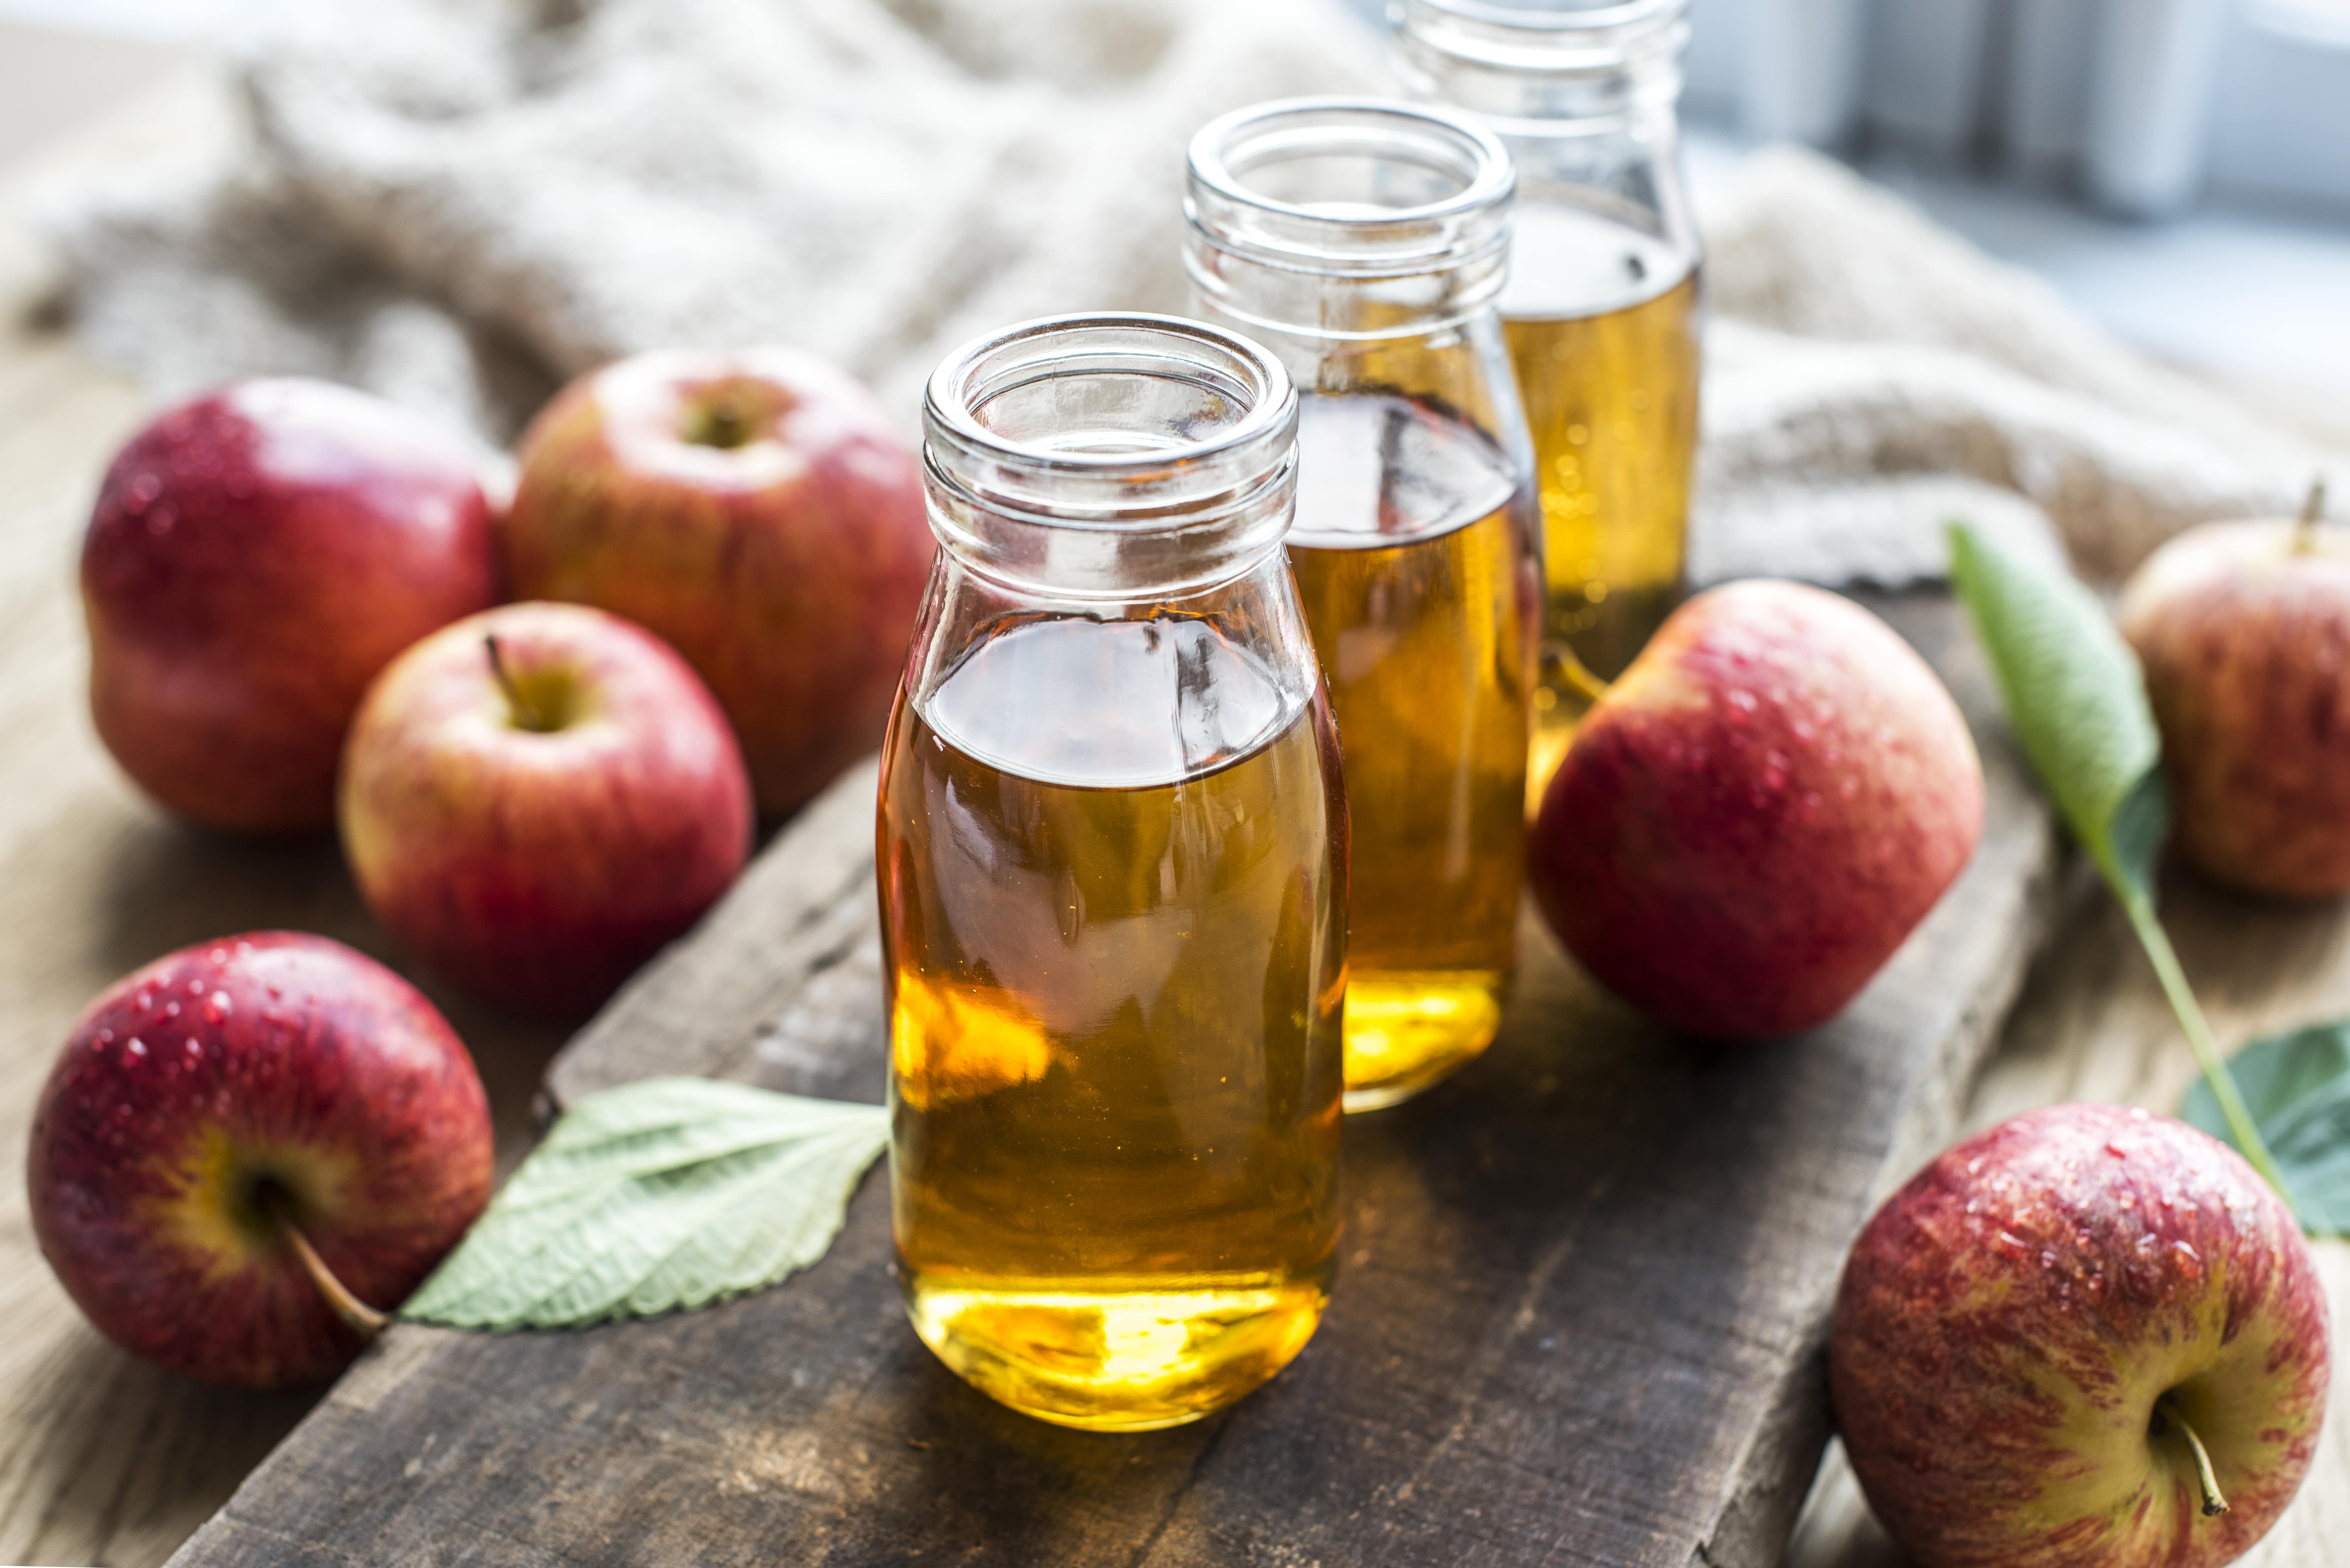 apple cider vinegar for dandruff